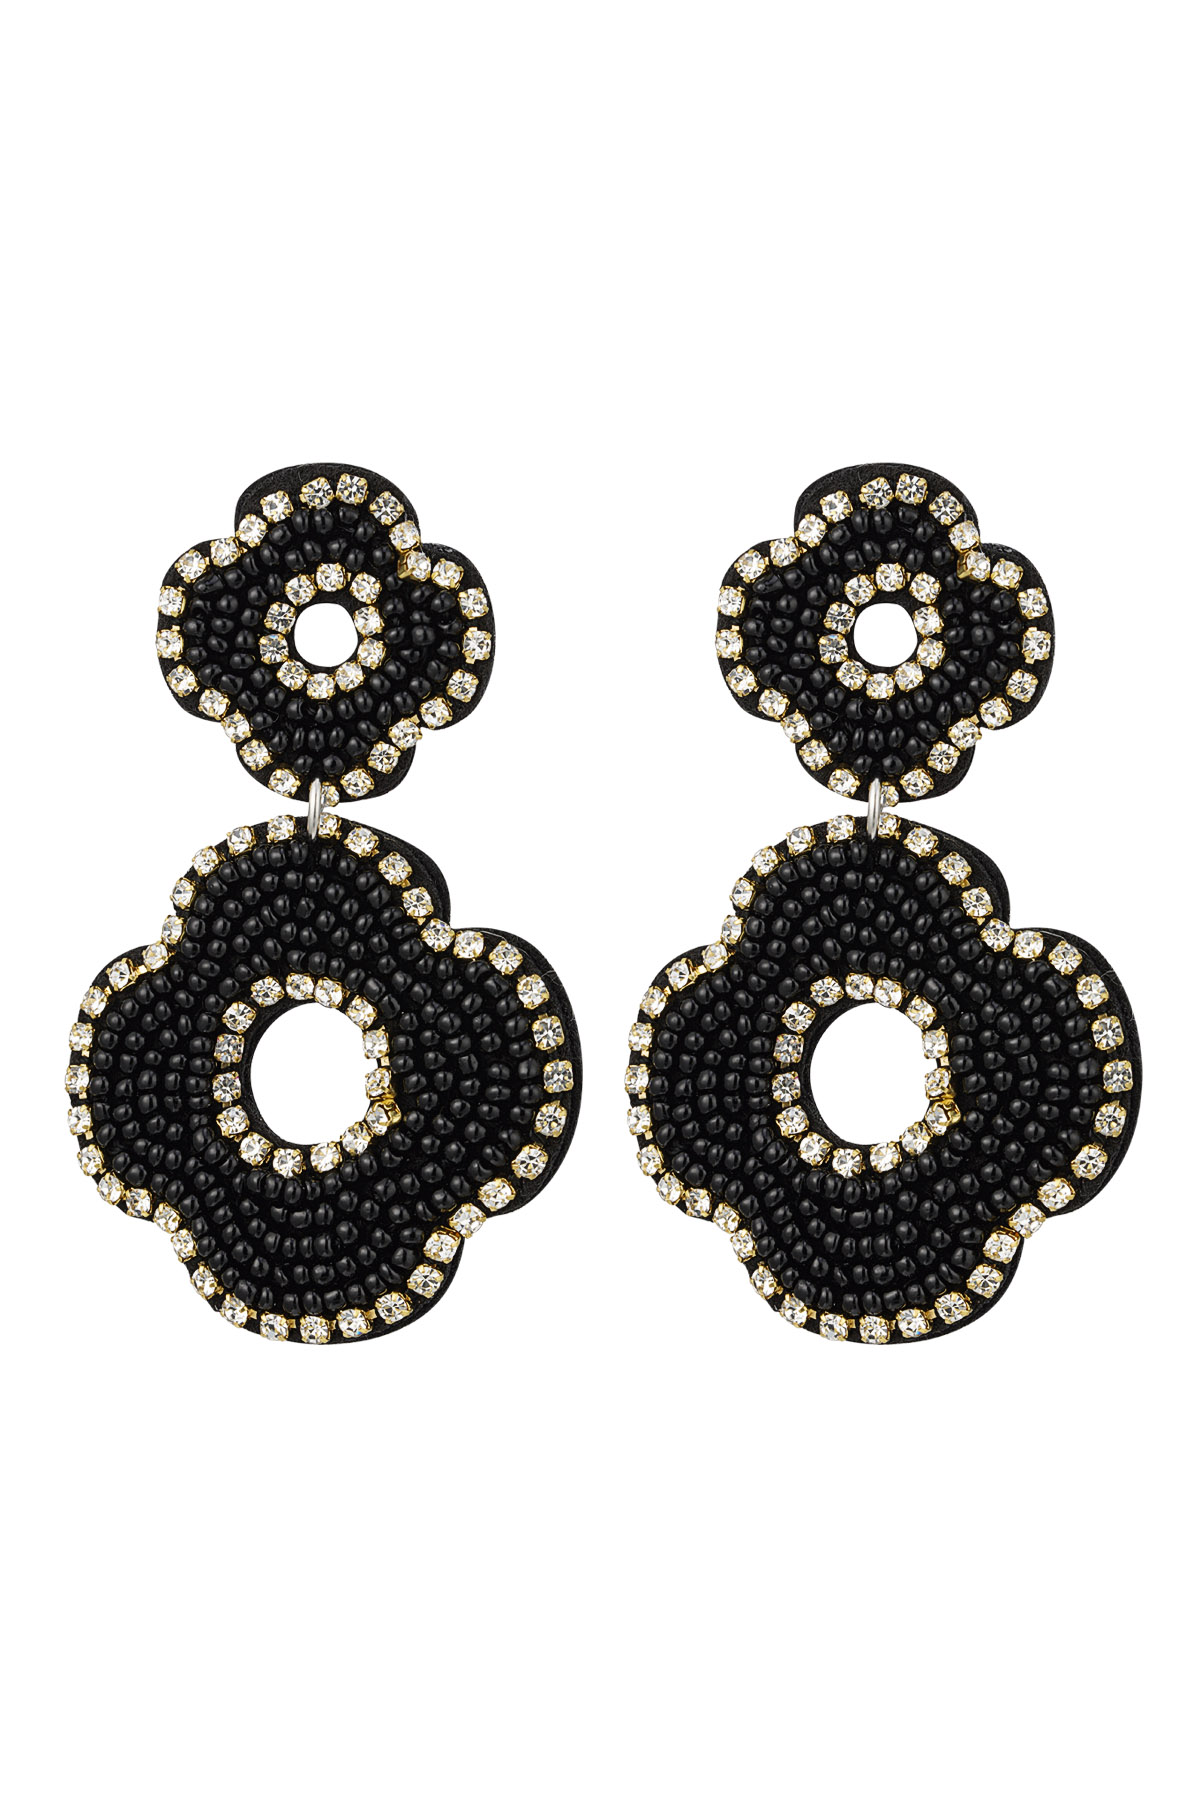 Ohrringe Perlen doppelte Blume - schwarz Glas h5 